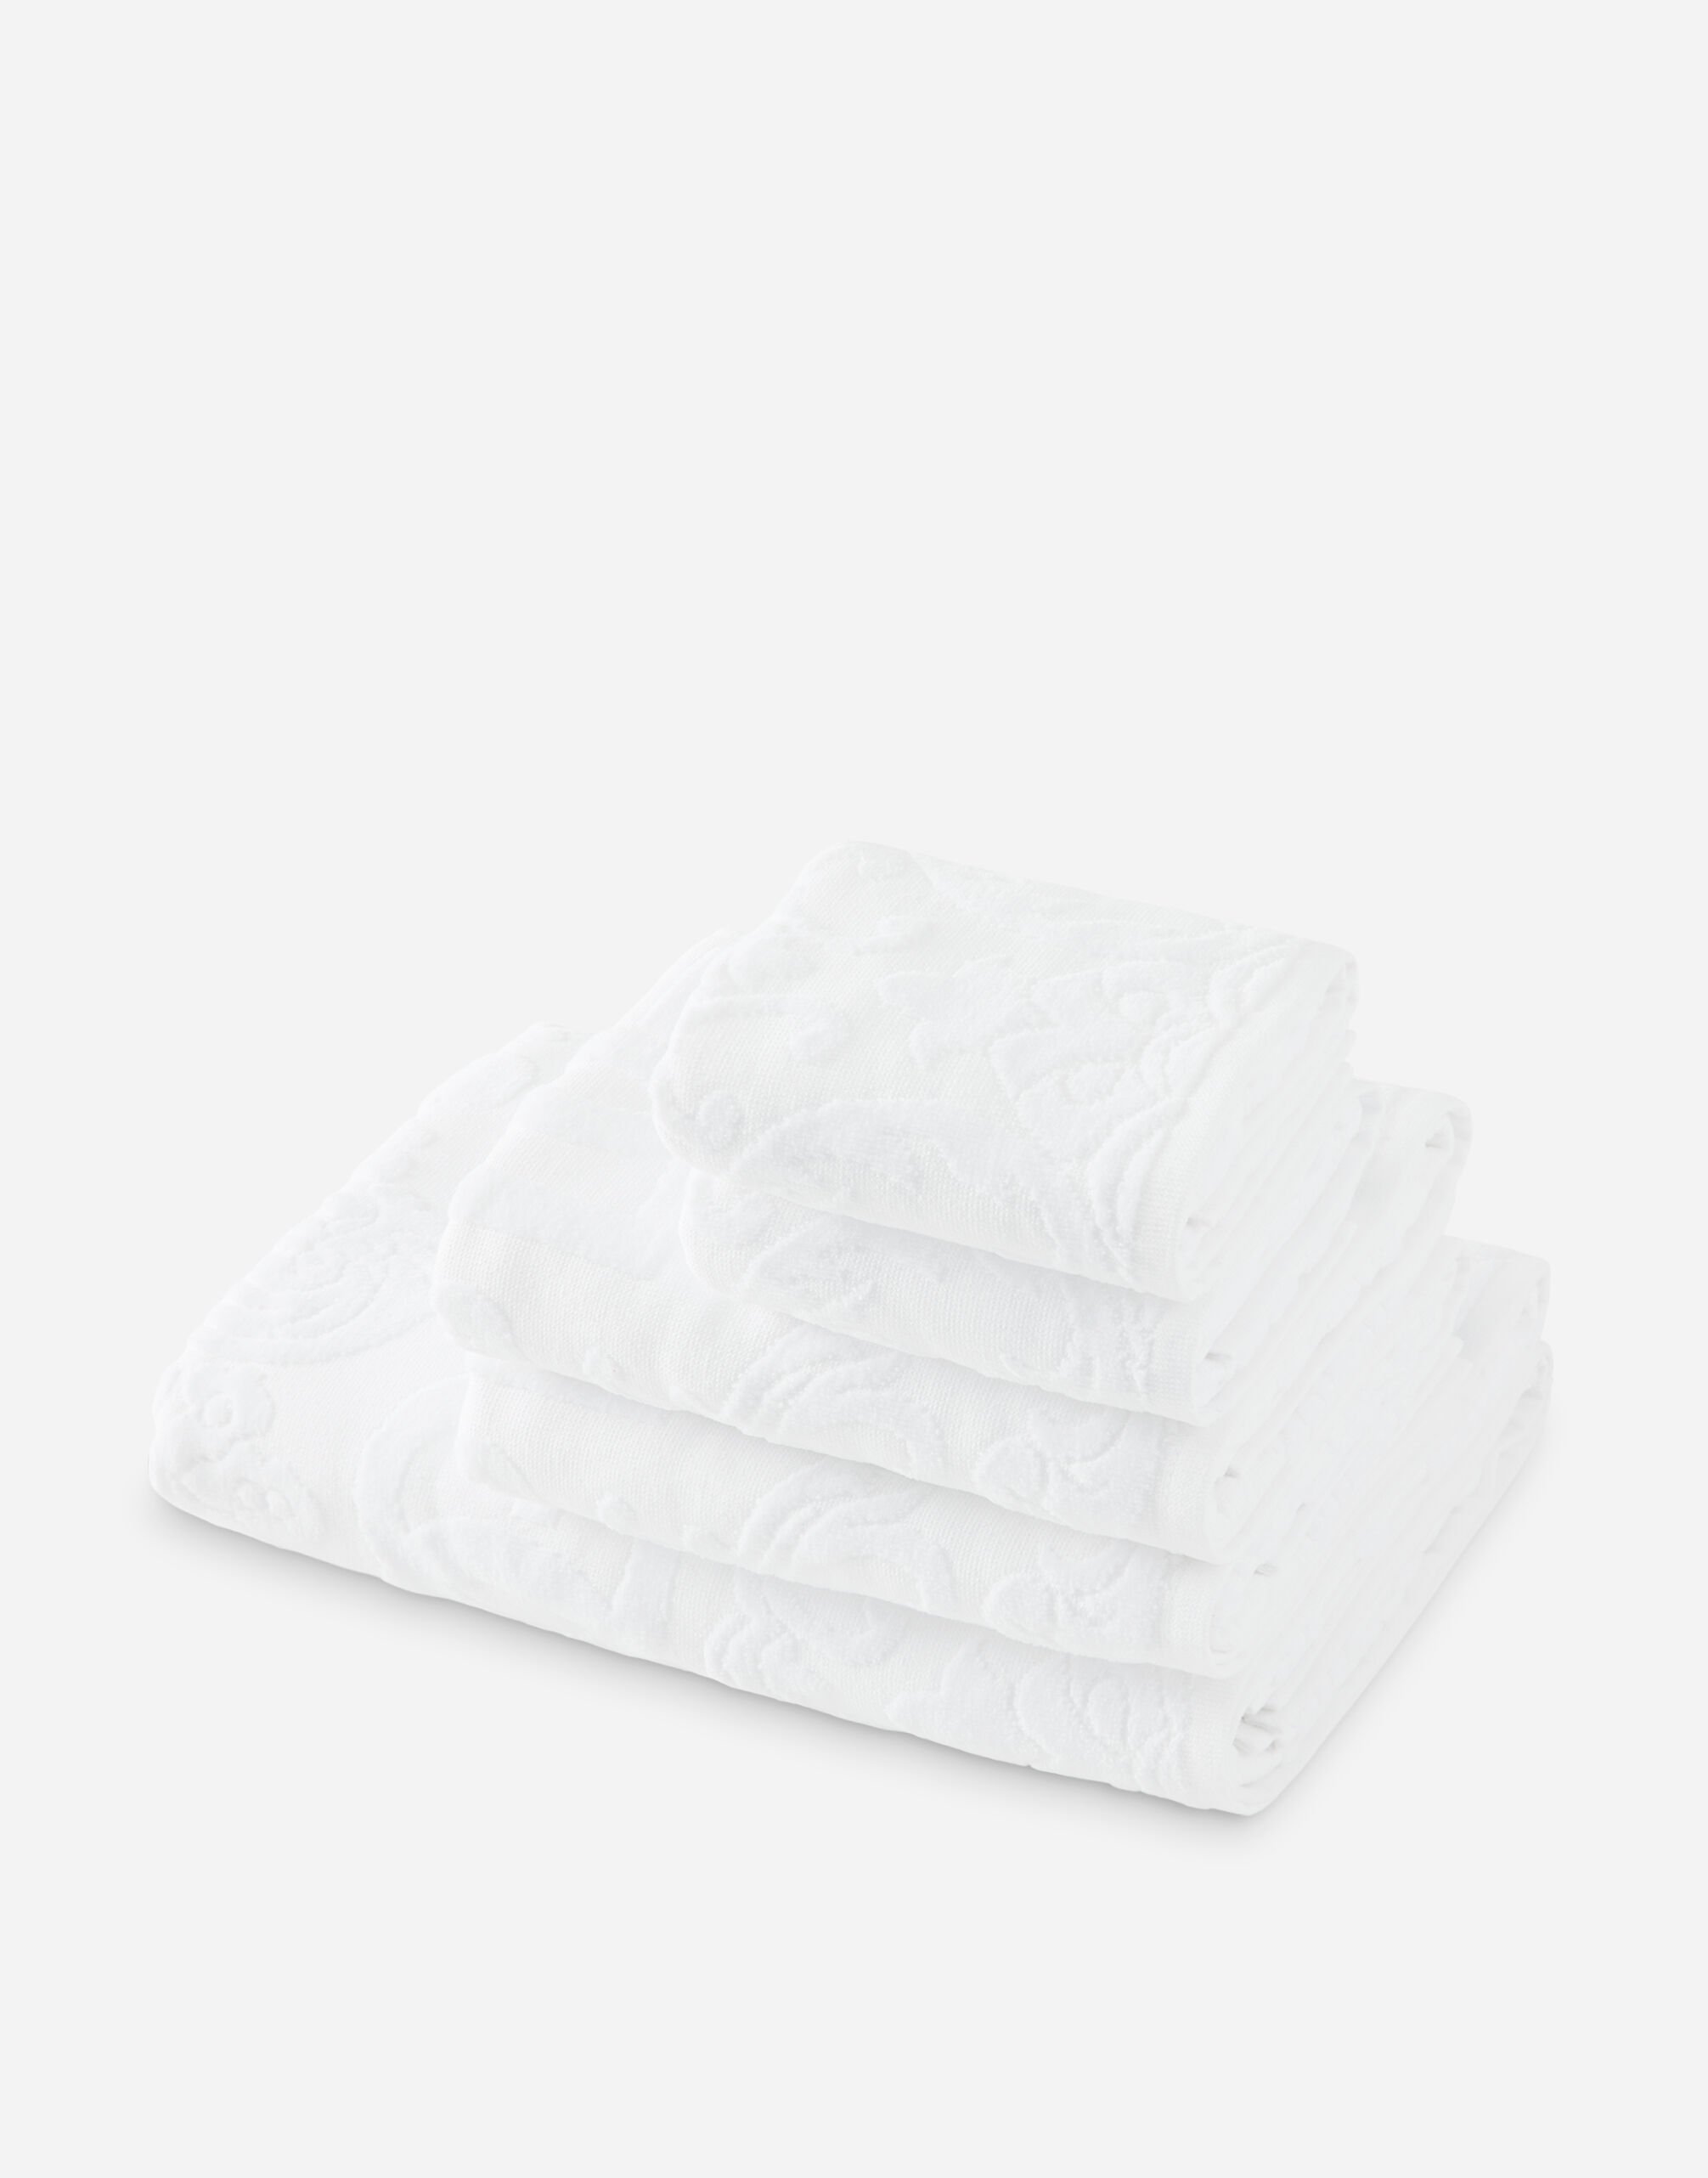 Dolce & Gabbana Juego de 5 toallas de rizo de algodón Multicolor TCF019TCAGB